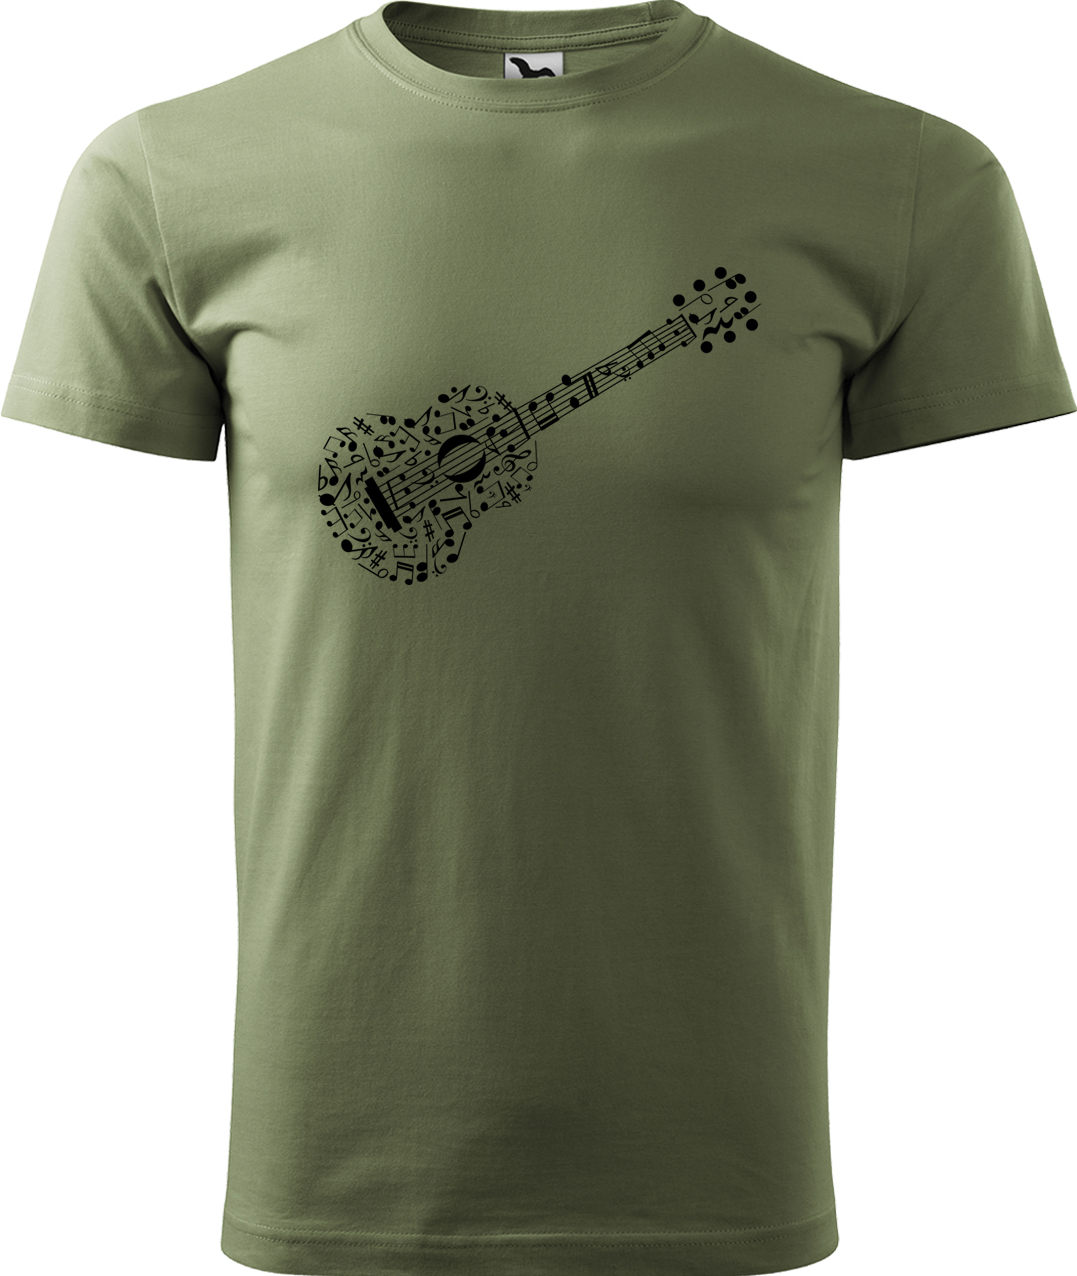 Pánské tričko s kytarou - Kytara z not Velikost: XL, Barva: Světlá khaki (28), Střih: pánský